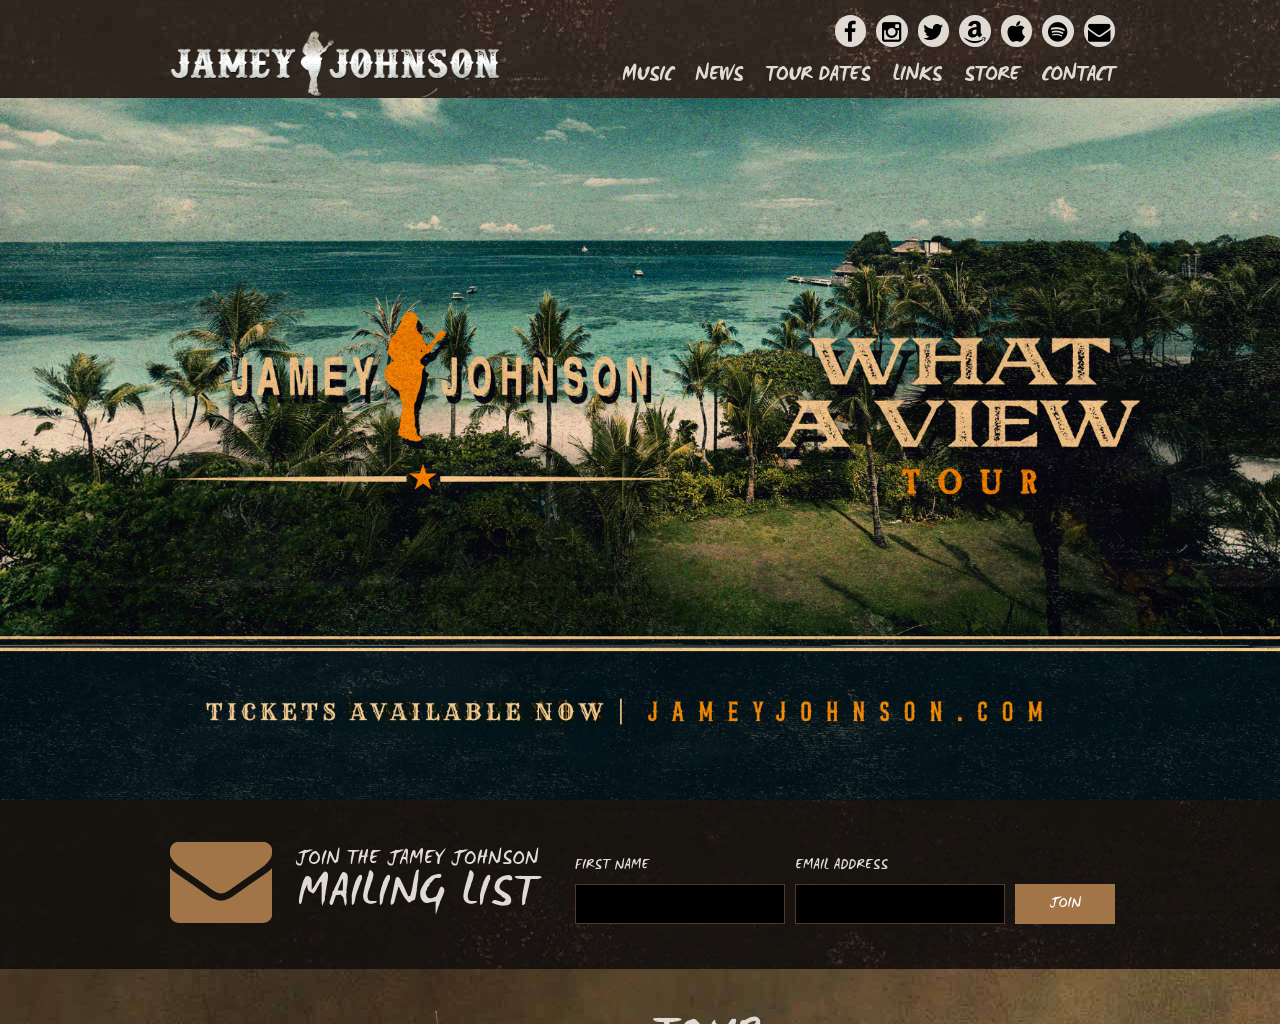 jameyjohnson.com